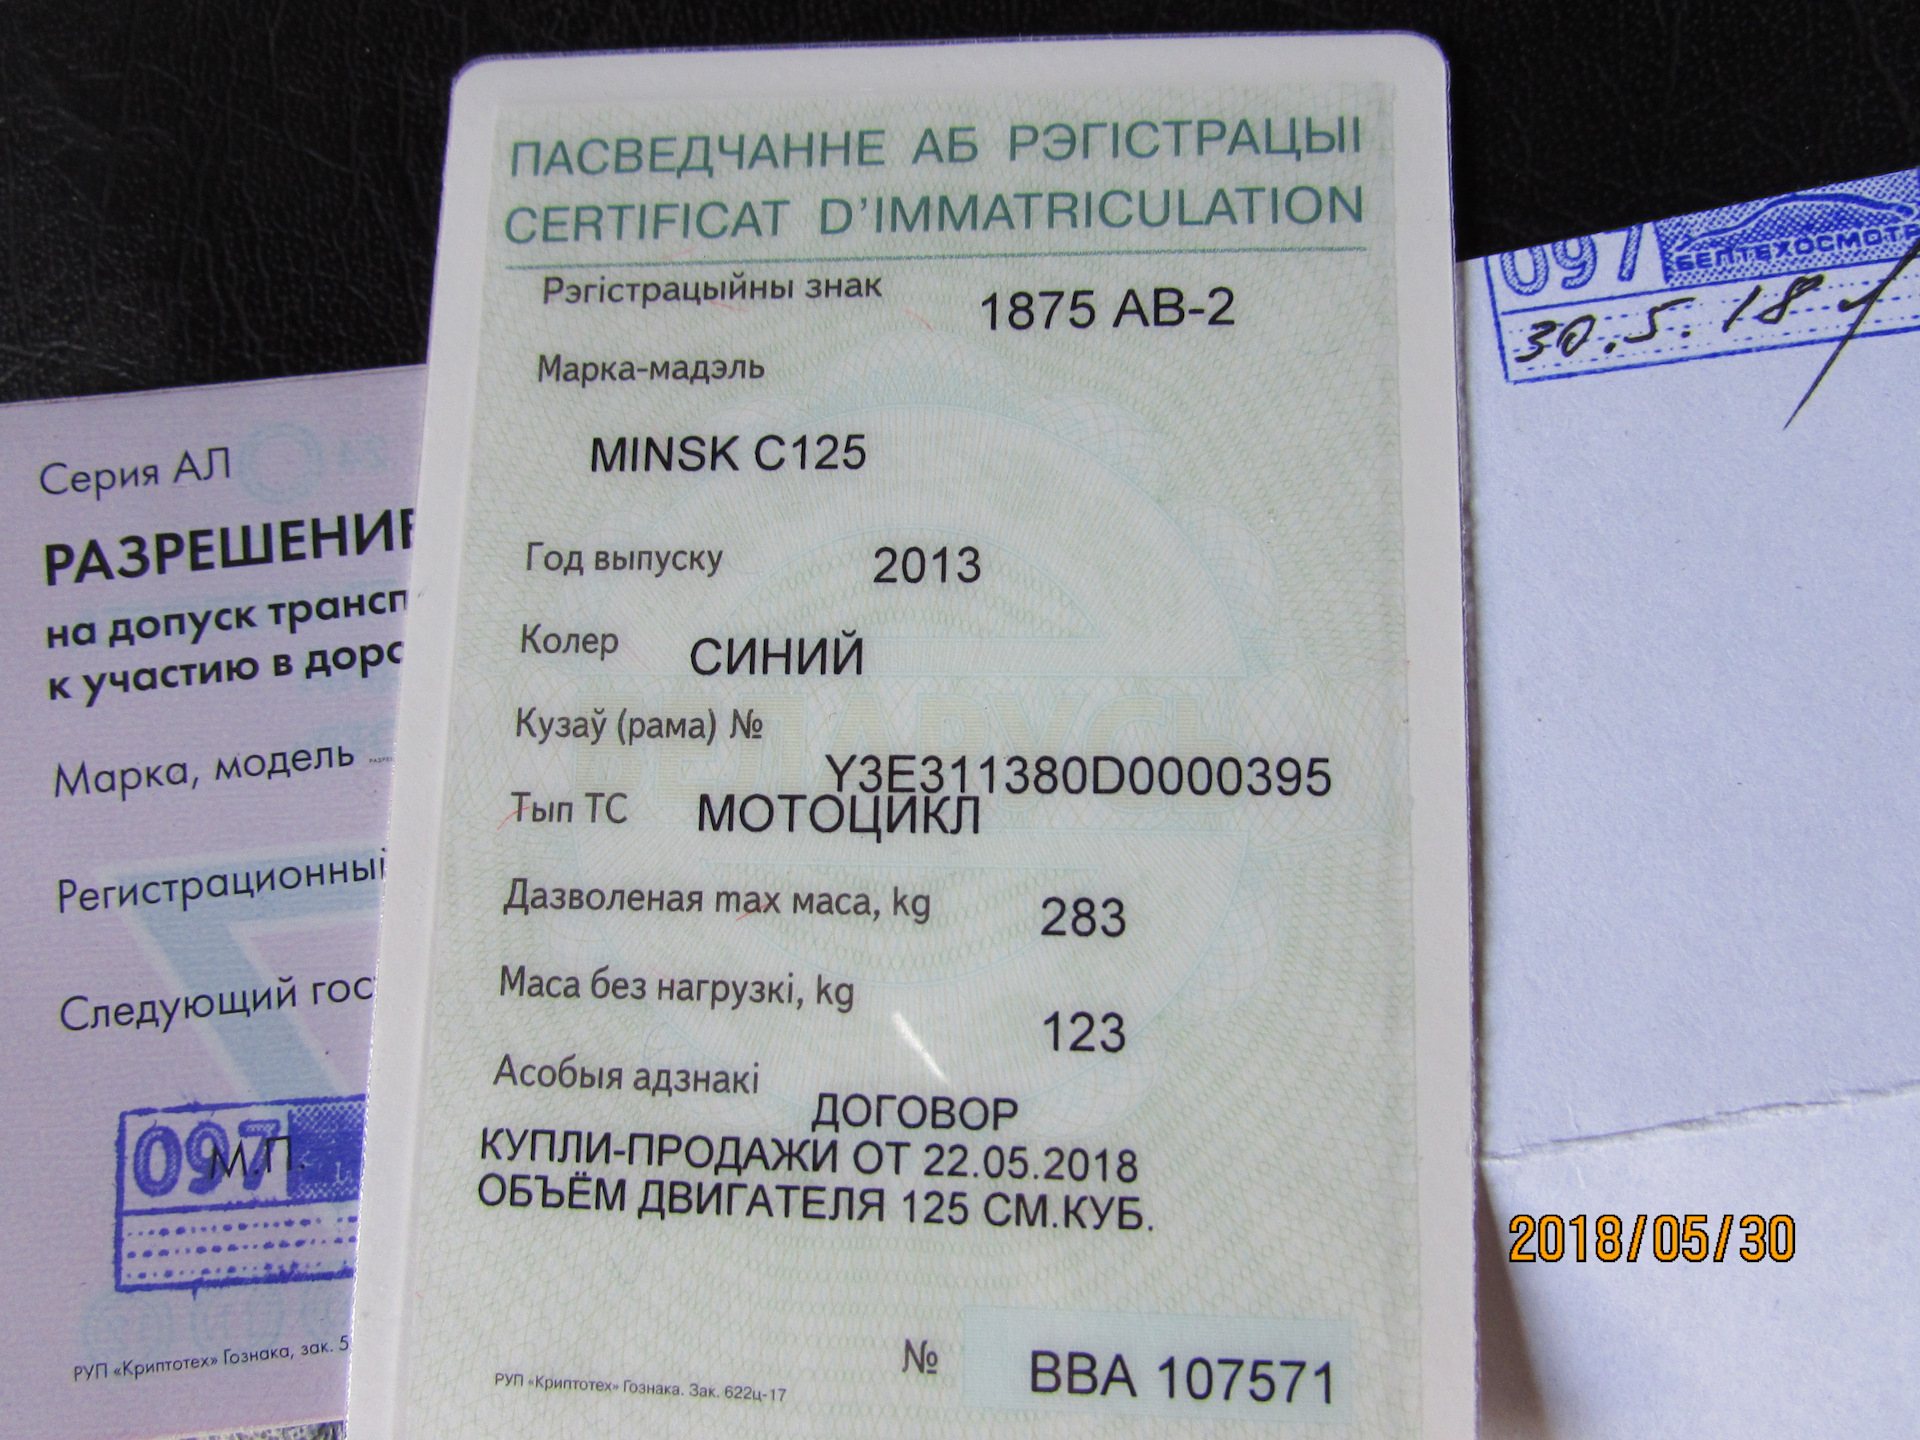 Технический паспорт на авто в Белоруссии